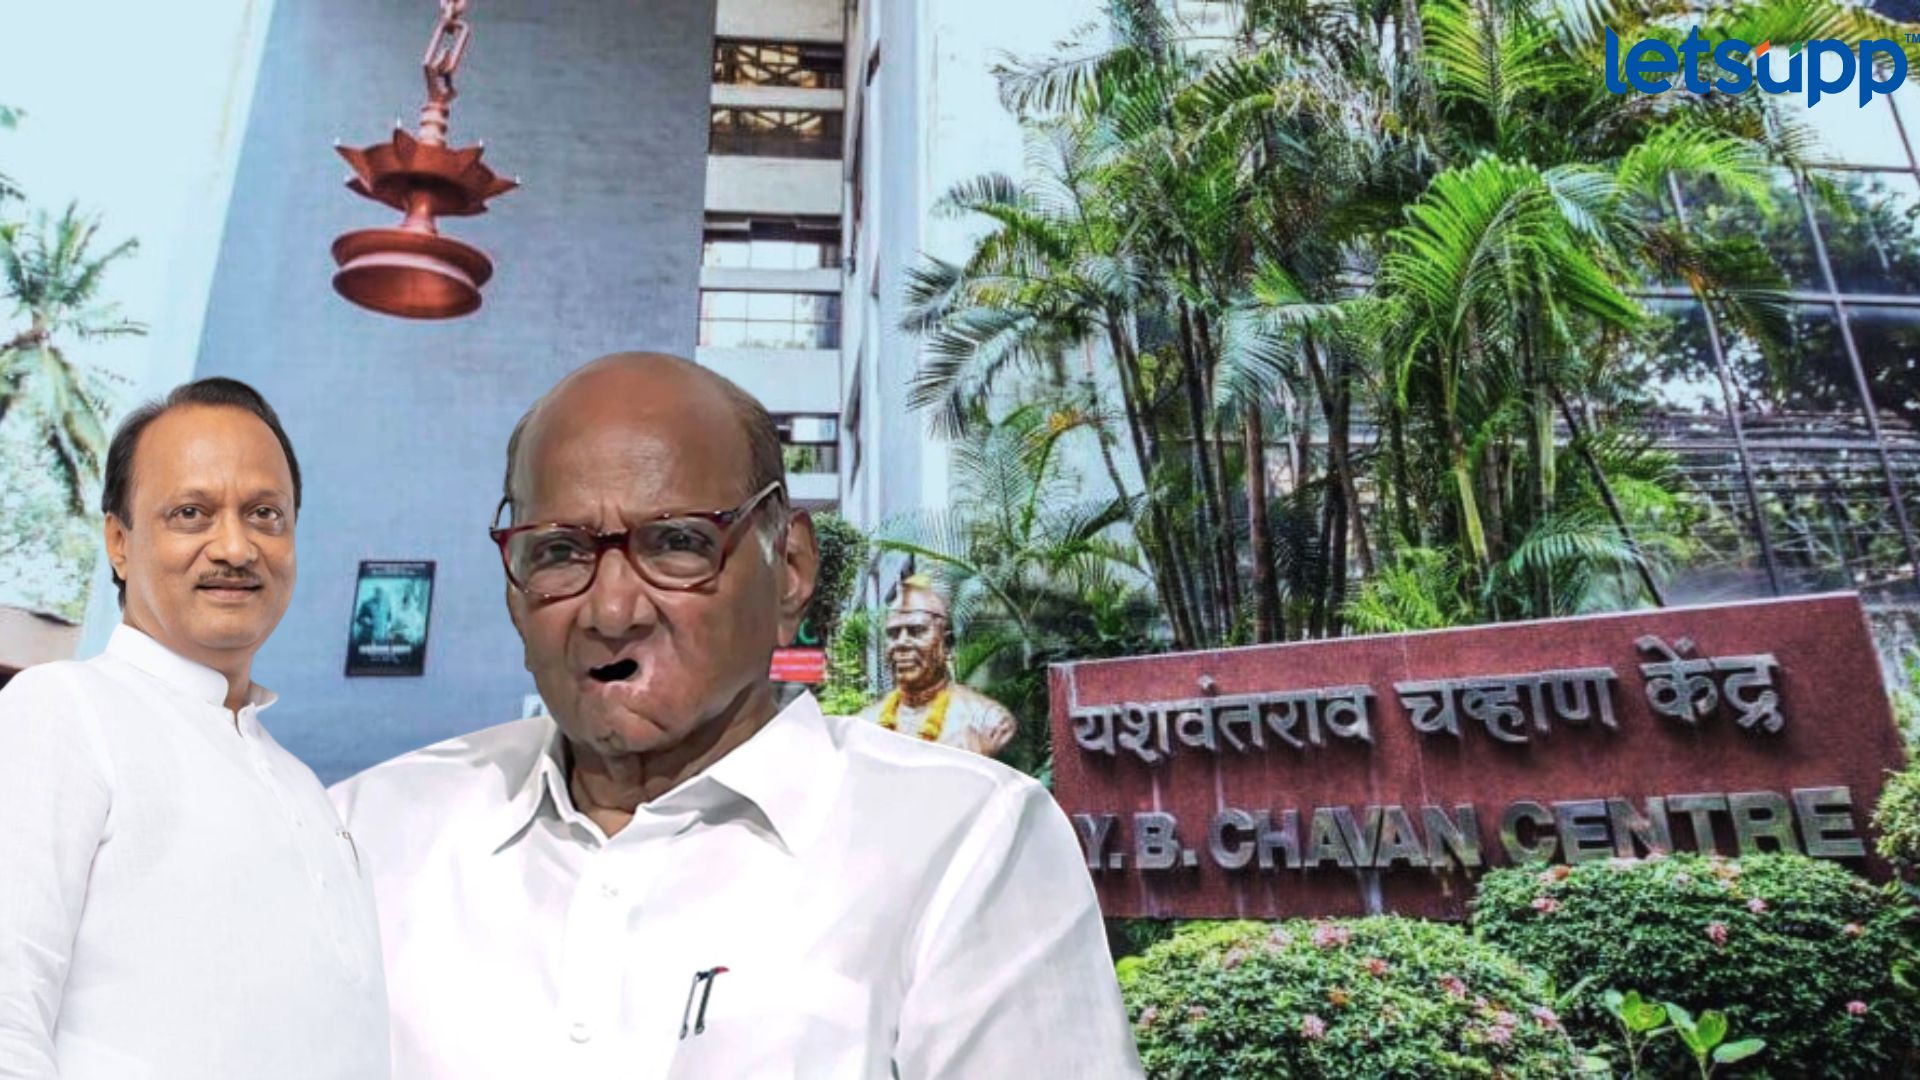 Maharashtra Politics : राष्ट्रवादीत टाचणी पडताच चर्चेत येणारं ‘यशंवतराव चव्हाण सेंटर’ काय आहे?